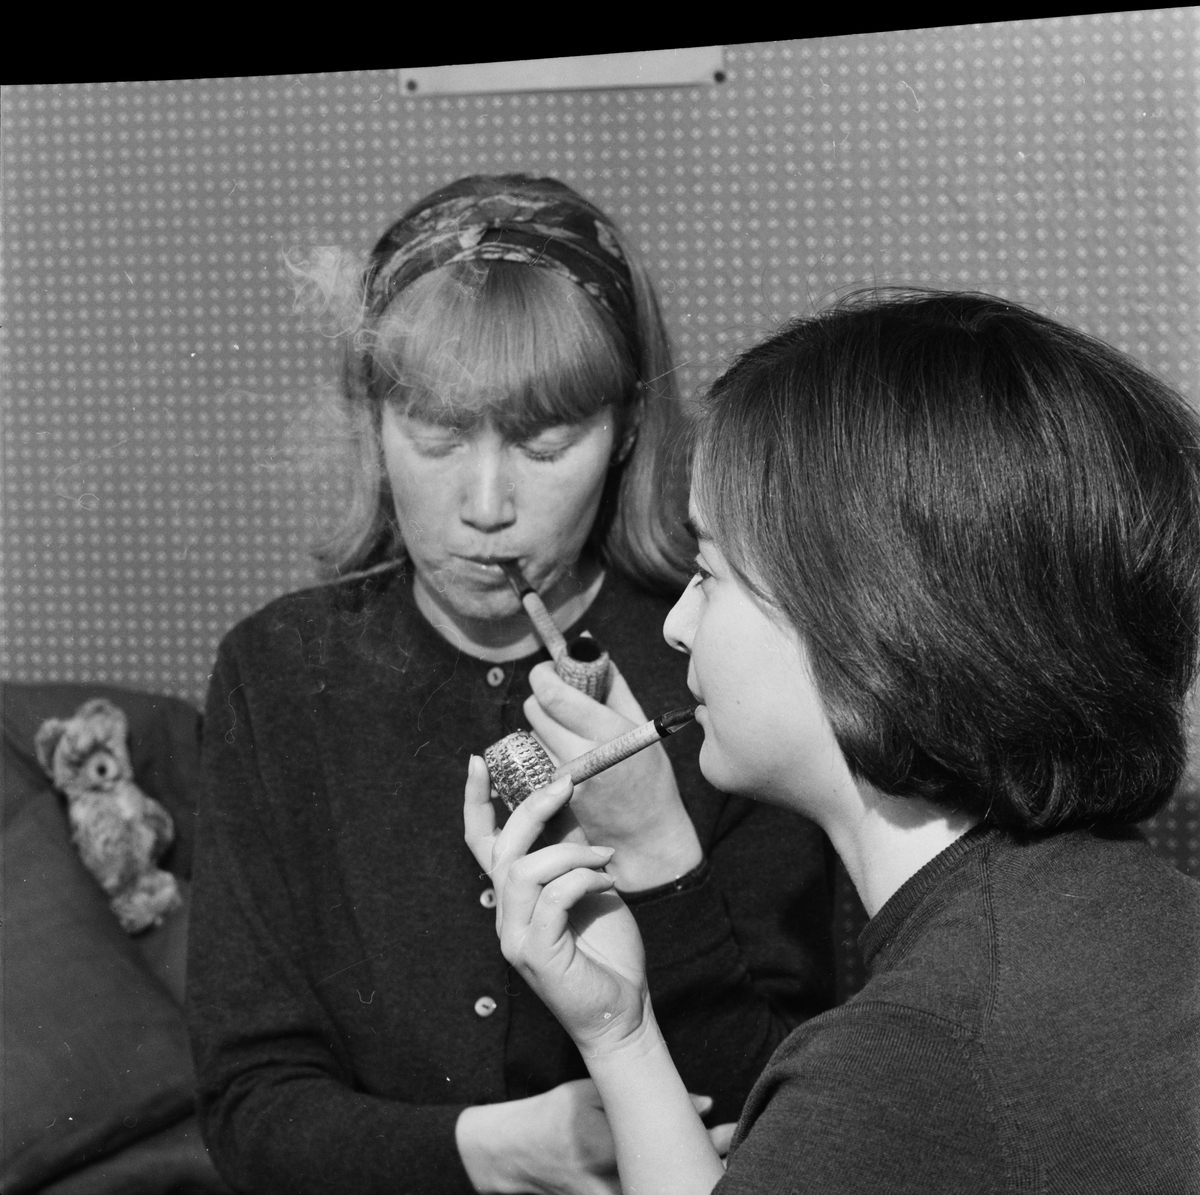 Studentliv - Karin Källner och Reidun Hannerz har bytt ut cigaretten mot pipa, Uppsala 1964